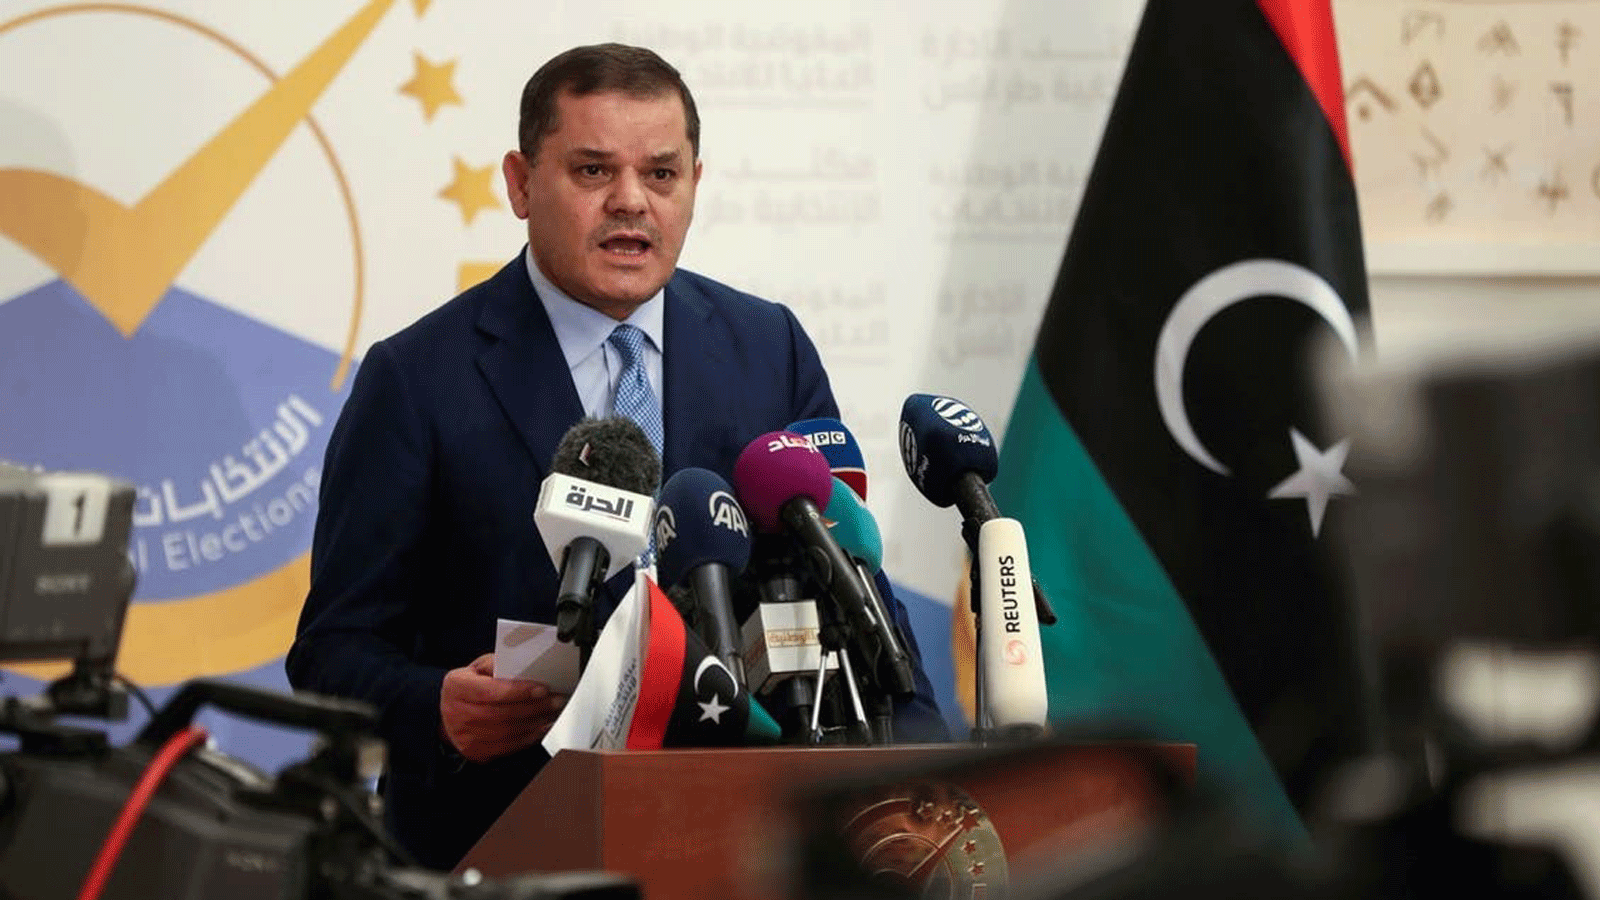 رئيس الوزراء الليبي المؤقت عبد الحميد دبيبة يُدلي بتصريحه بعدما سجل ترشيحه للانتخابات الرئاسية في 21 تشرين الثاني\ نوفمبر 2021 في العاصمة طرابلس.